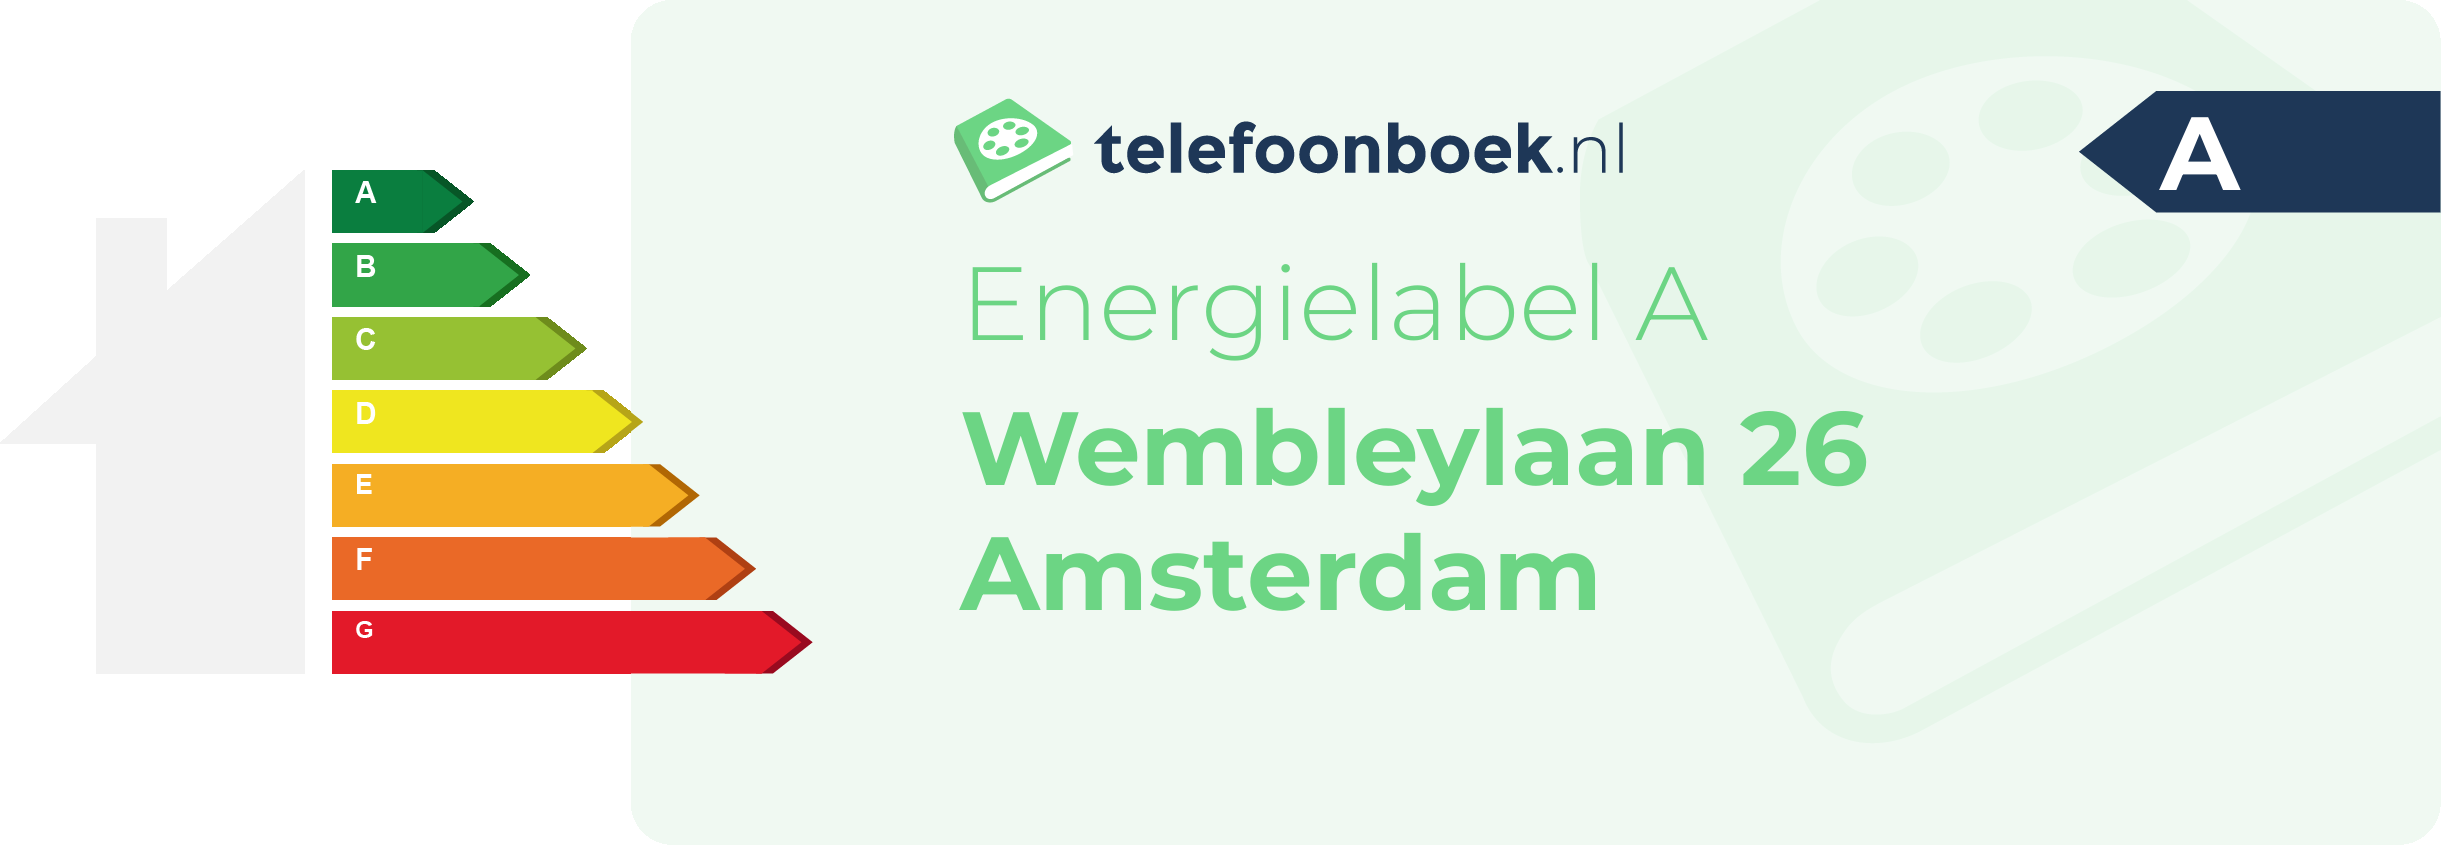 Energielabel Wembleylaan 26 Amsterdam